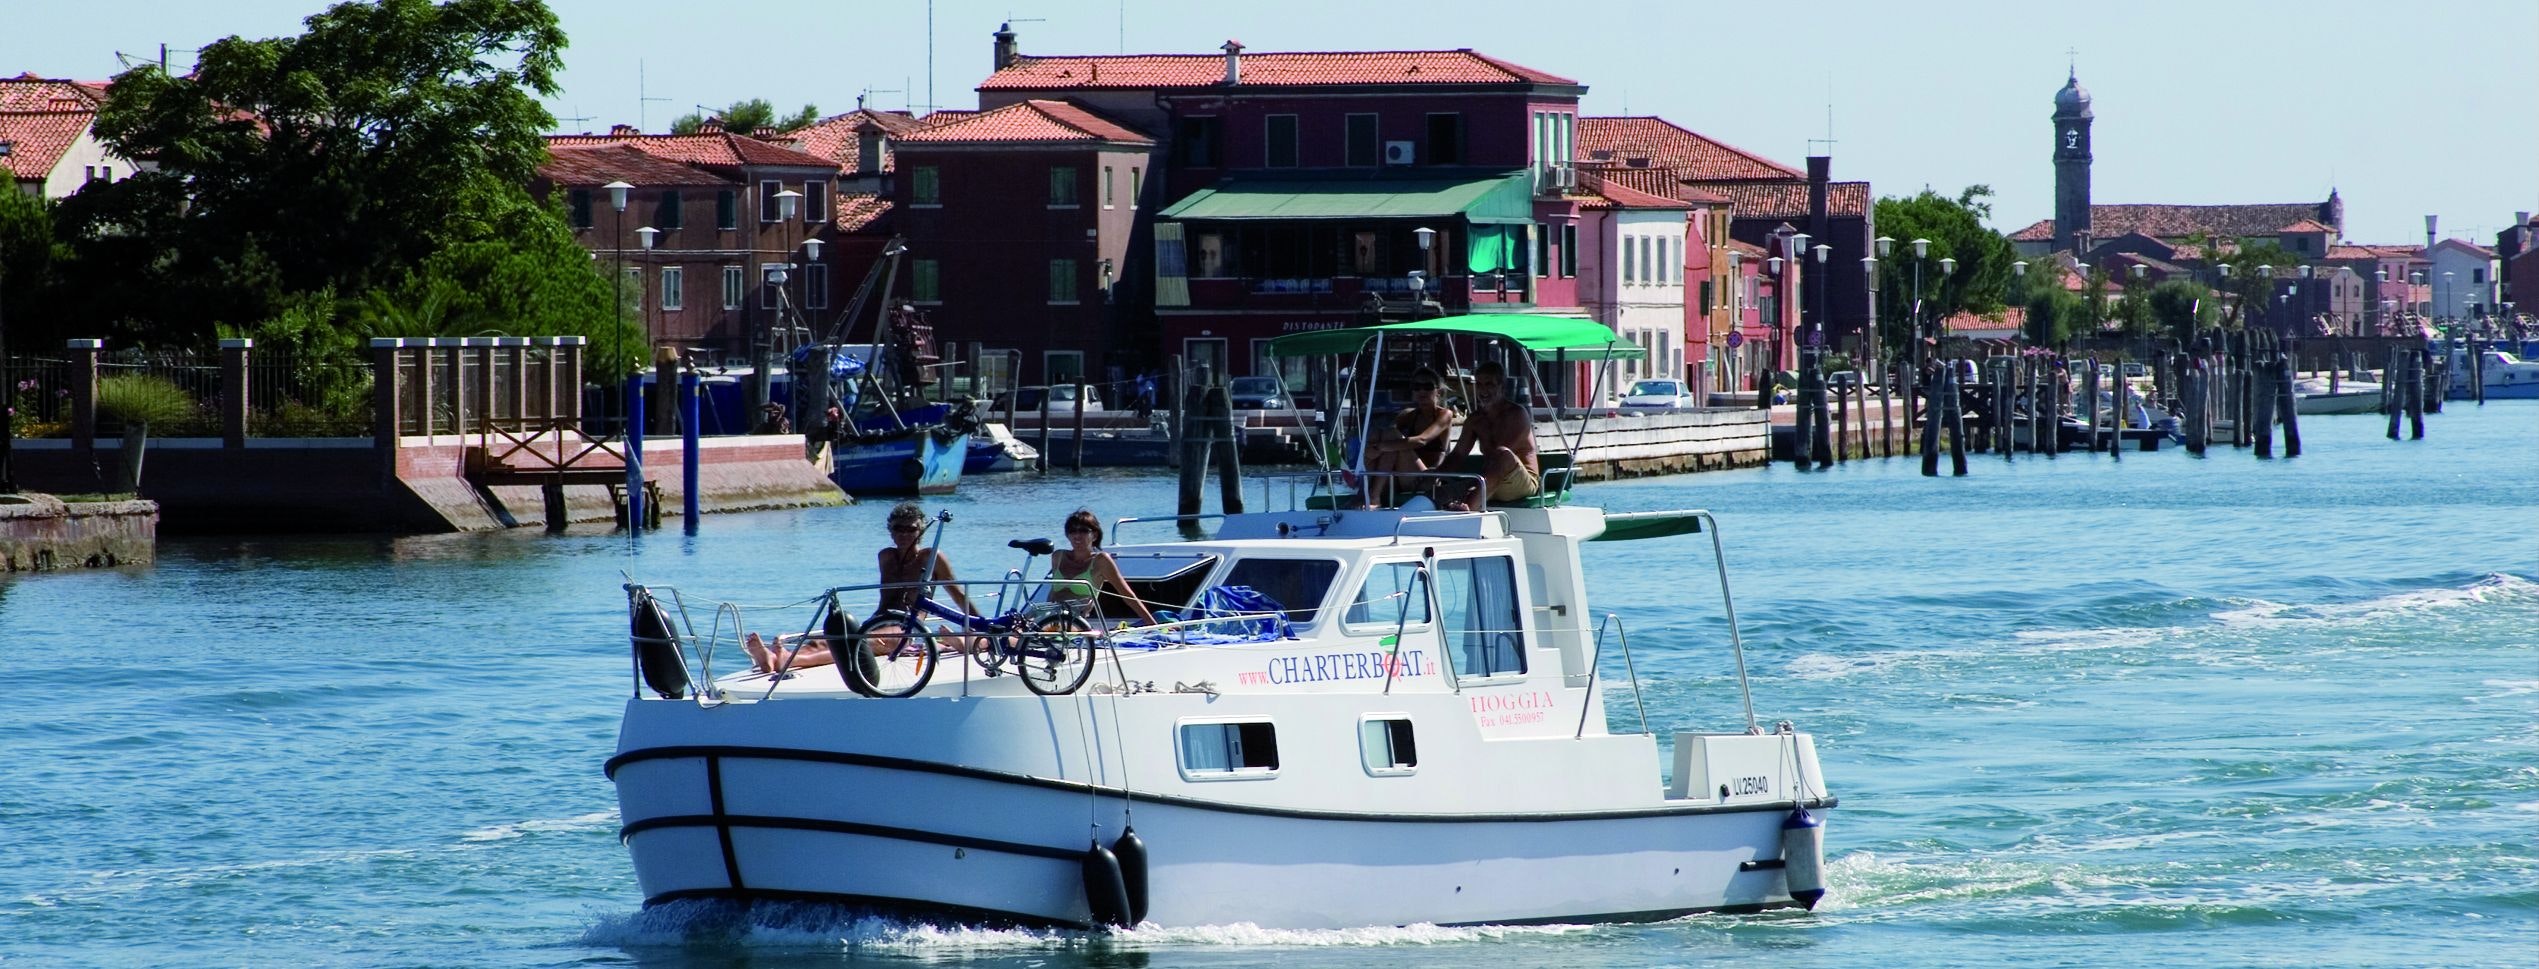 Personas a bordo de una casa flotante en la Laguna de Venecia